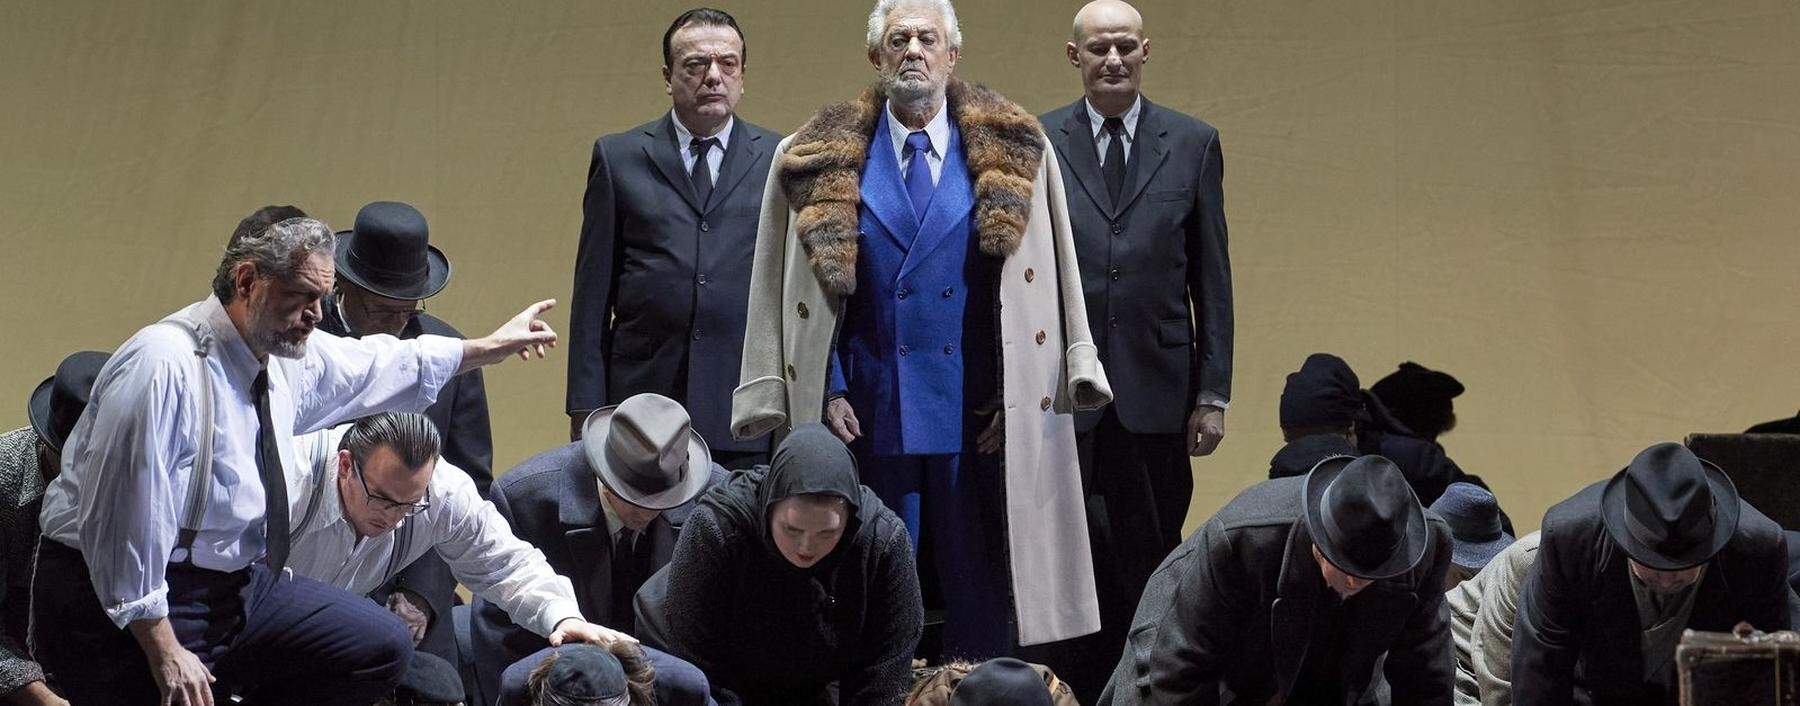 Er steht immer noch im Mittelpunkt: Plácido Domingo als der babylonische König Nabucco in der gleichnamigen Verdi-Oper. 